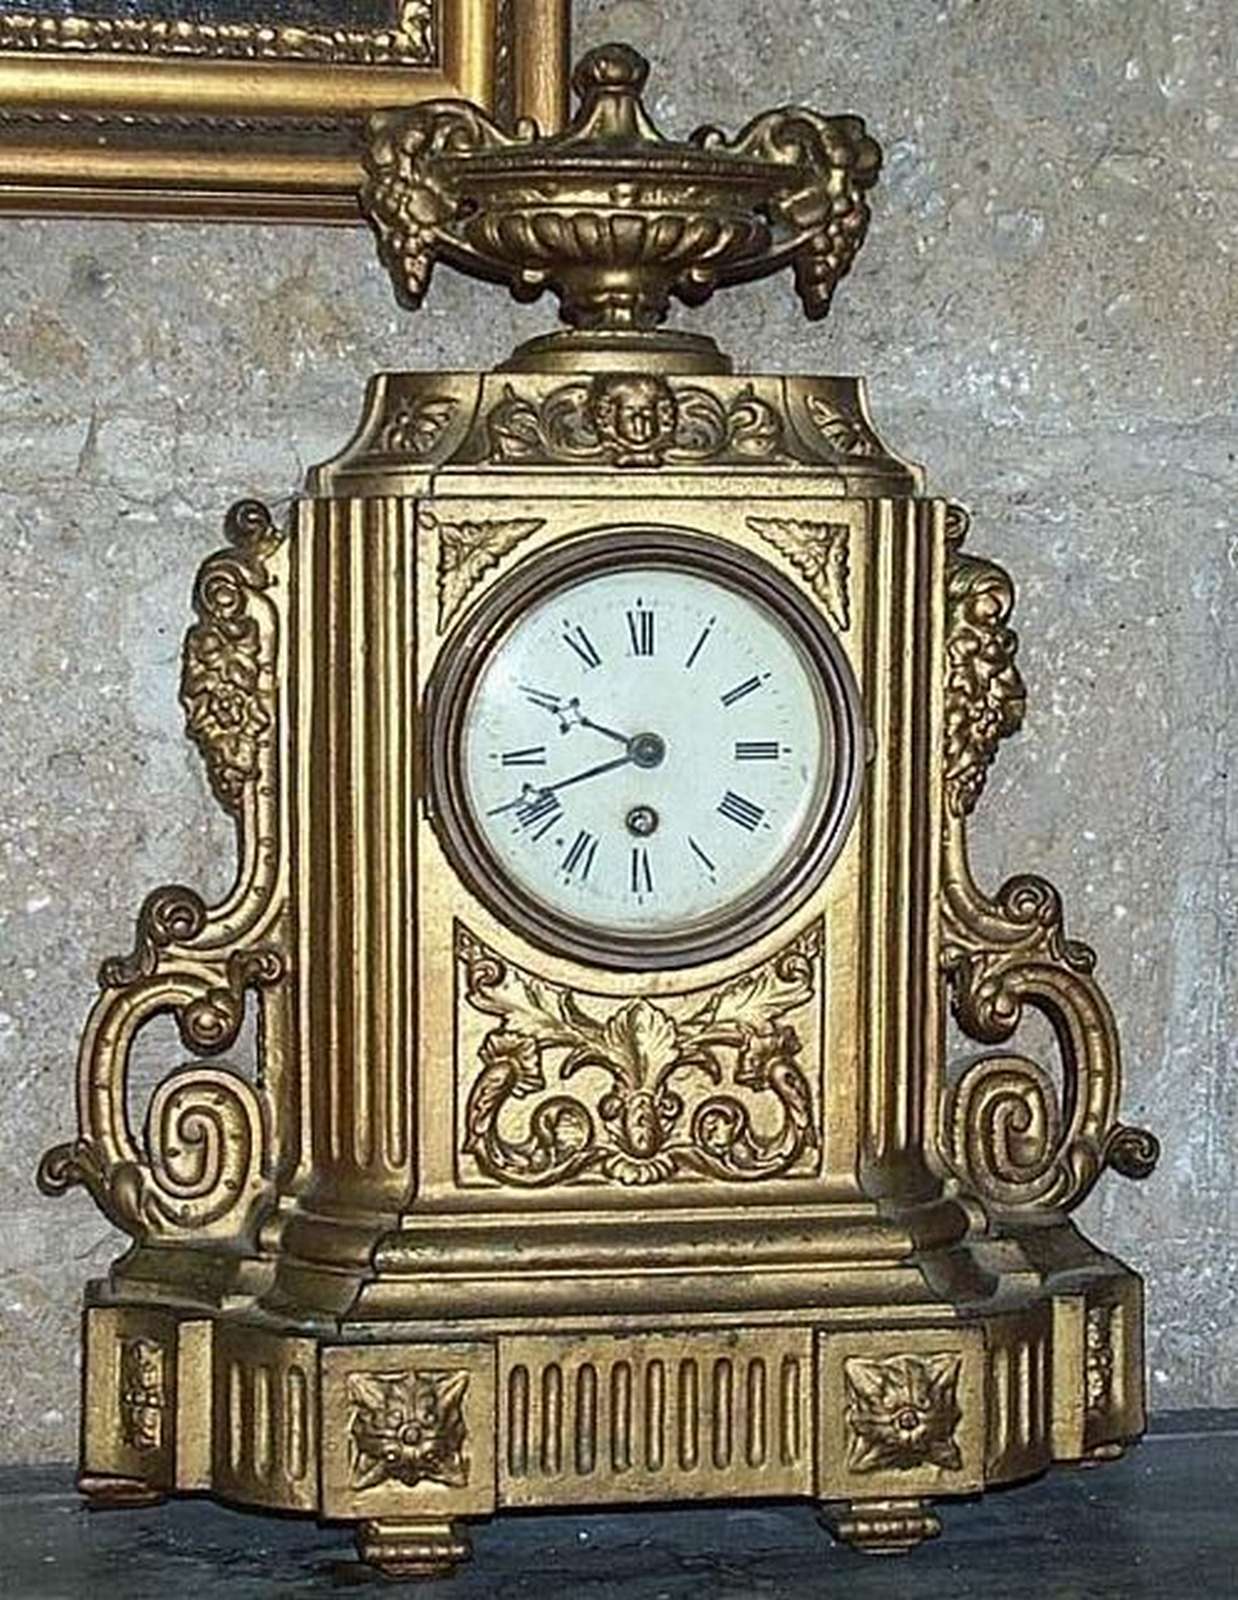 Antico orologio in antimonio. Epoca inizi 1900. - Vari - Mobili antichi - Prodotti - Antichità Fiorillo